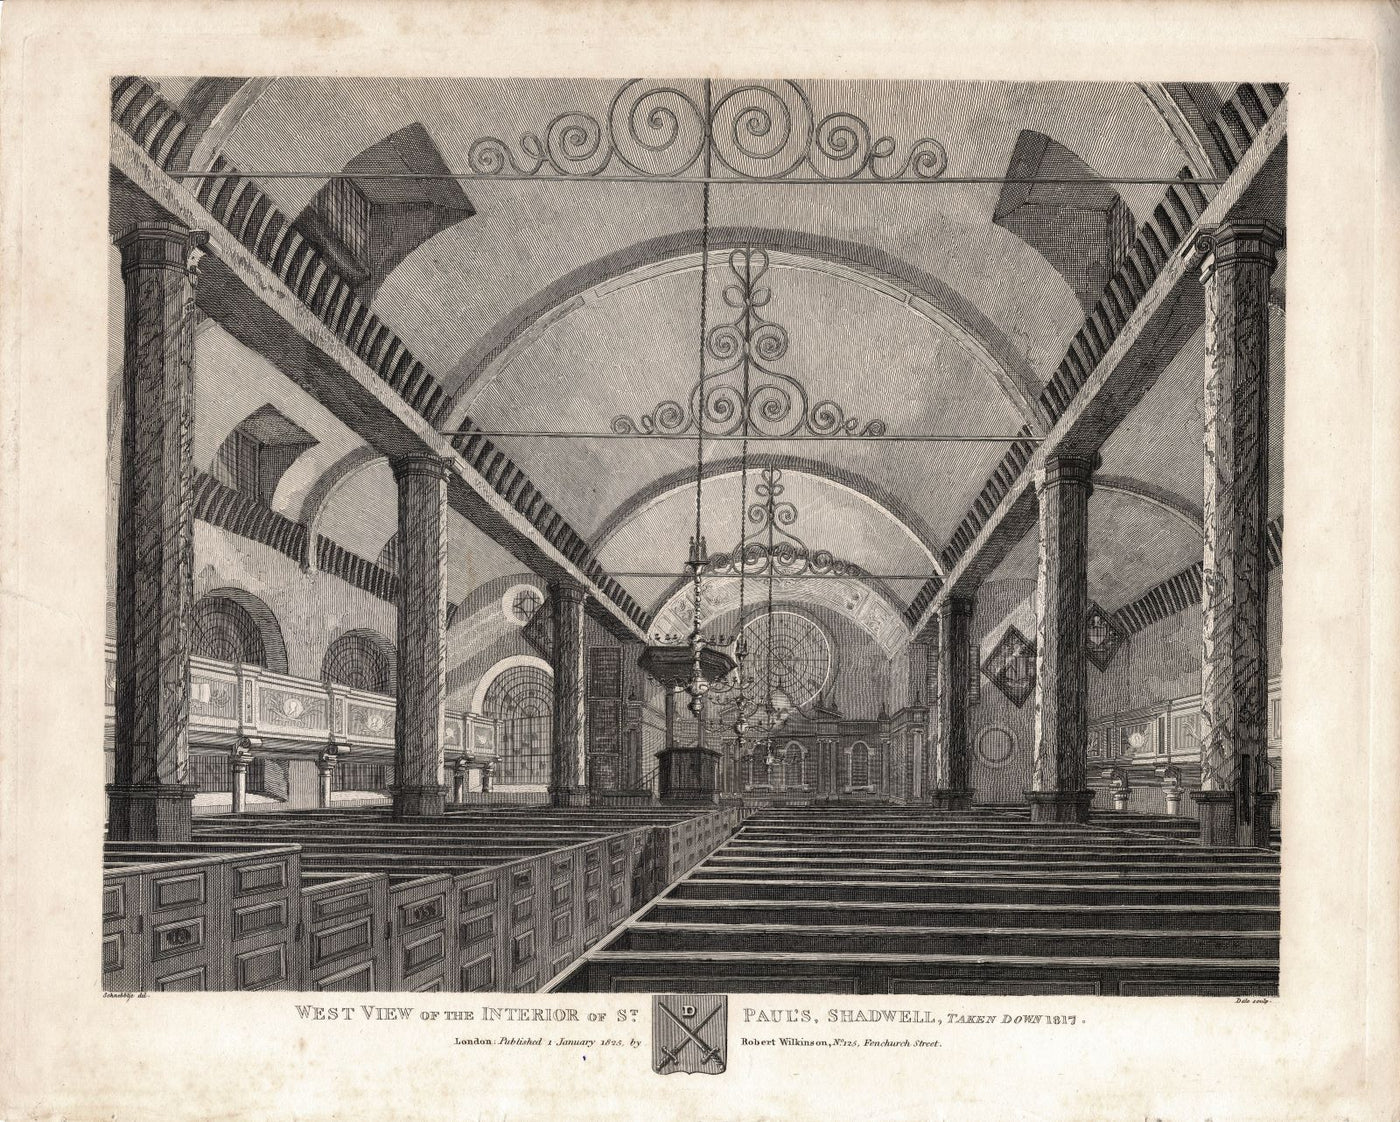 St. Paul's Church Shadwell interior antique print 1825